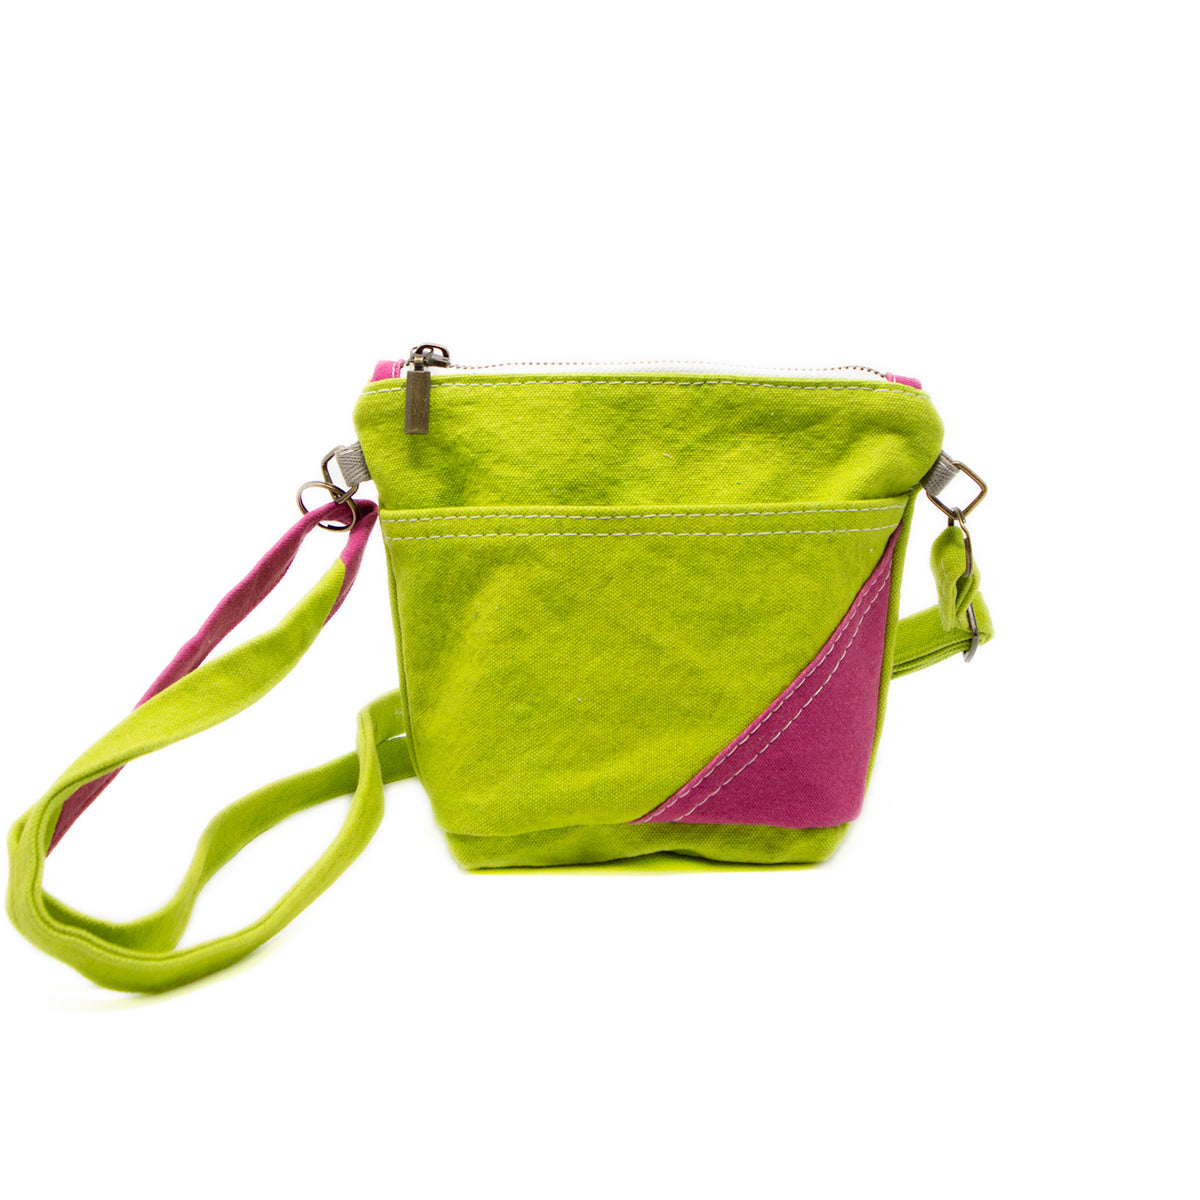 neon green crossbody bag, cotton canvas, environmentally friendly handbag